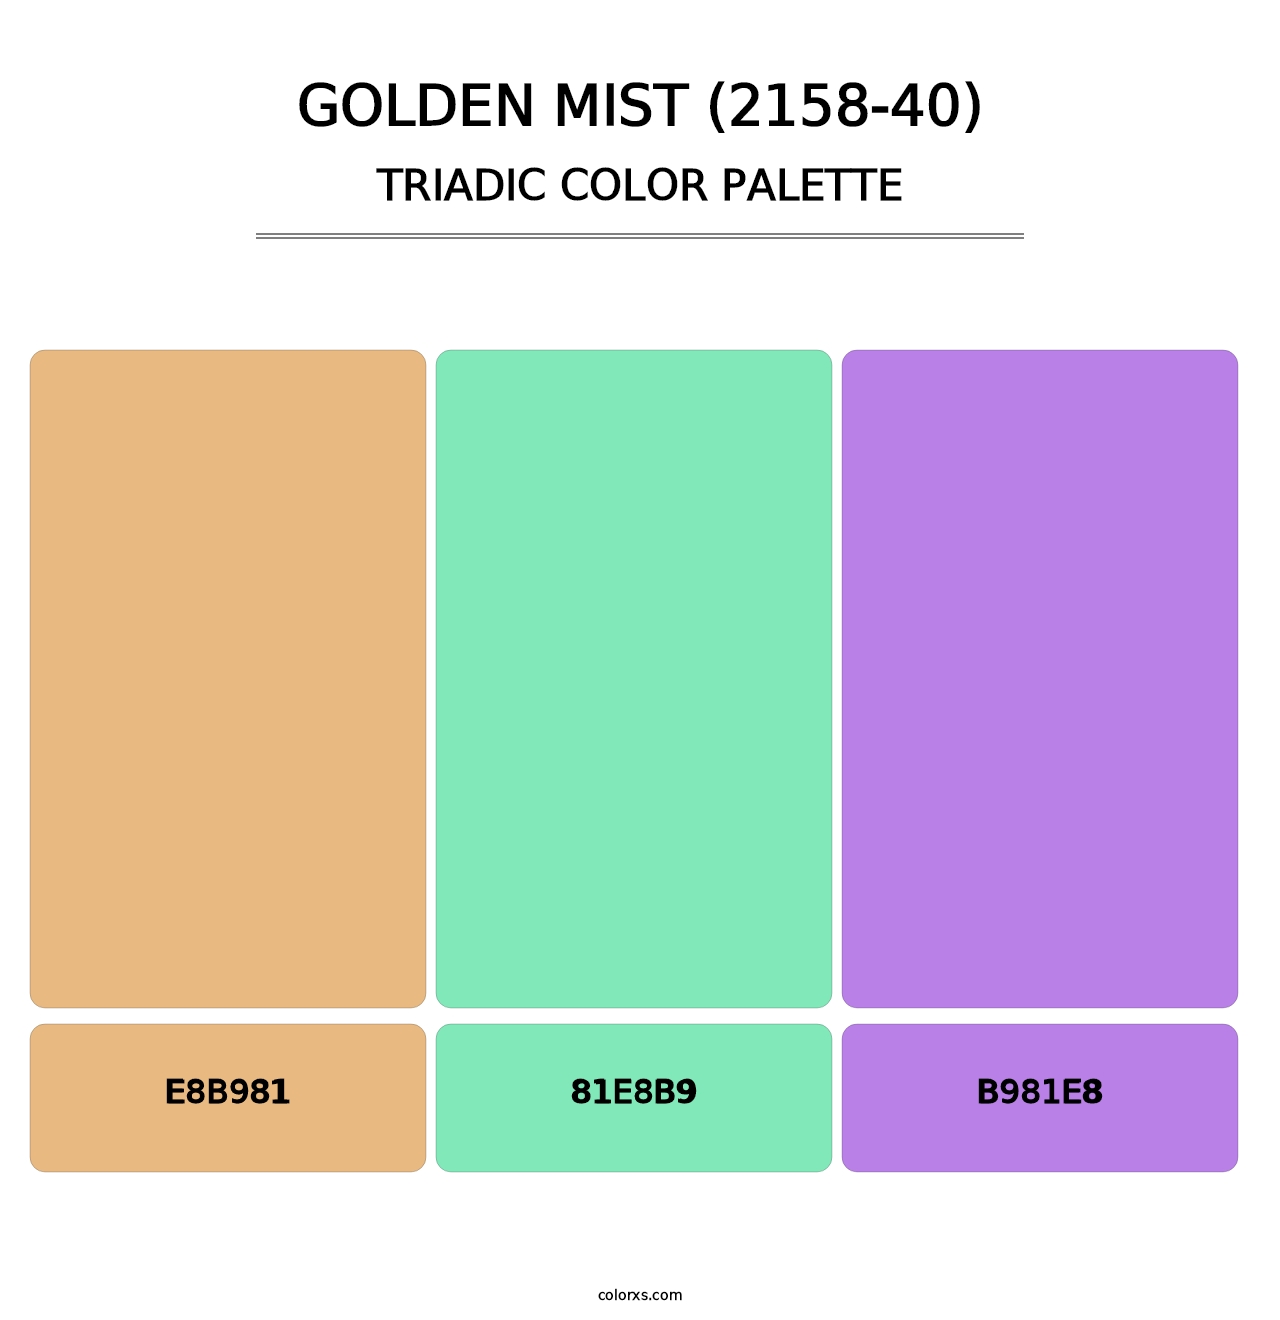 Golden Mist (2158-40) - Triadic Color Palette